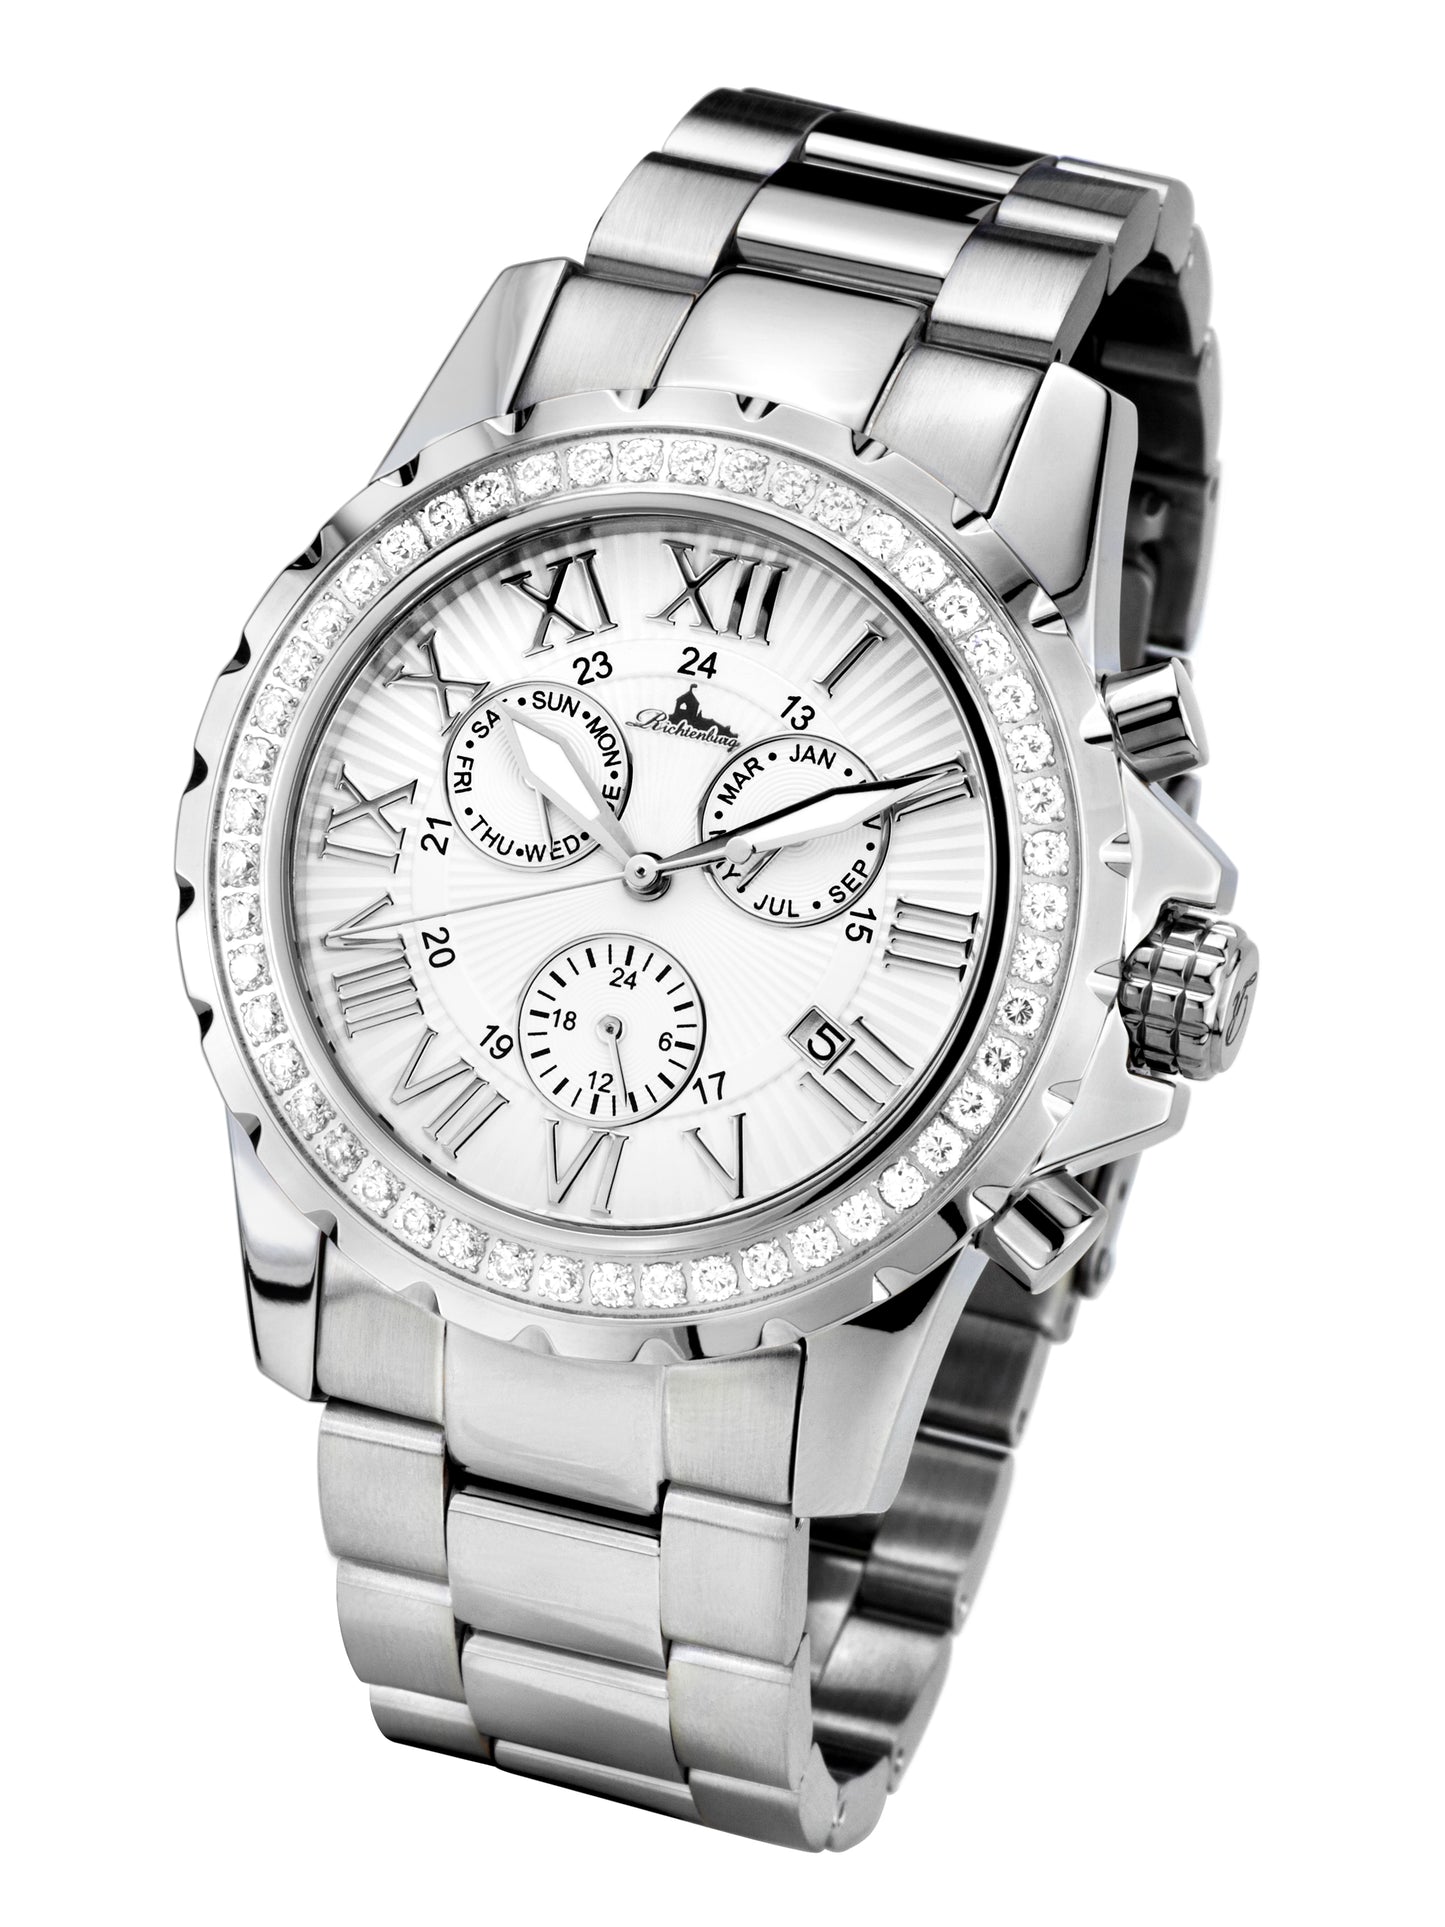 Automatic watches — Romantica — Richtenburg — steel silver